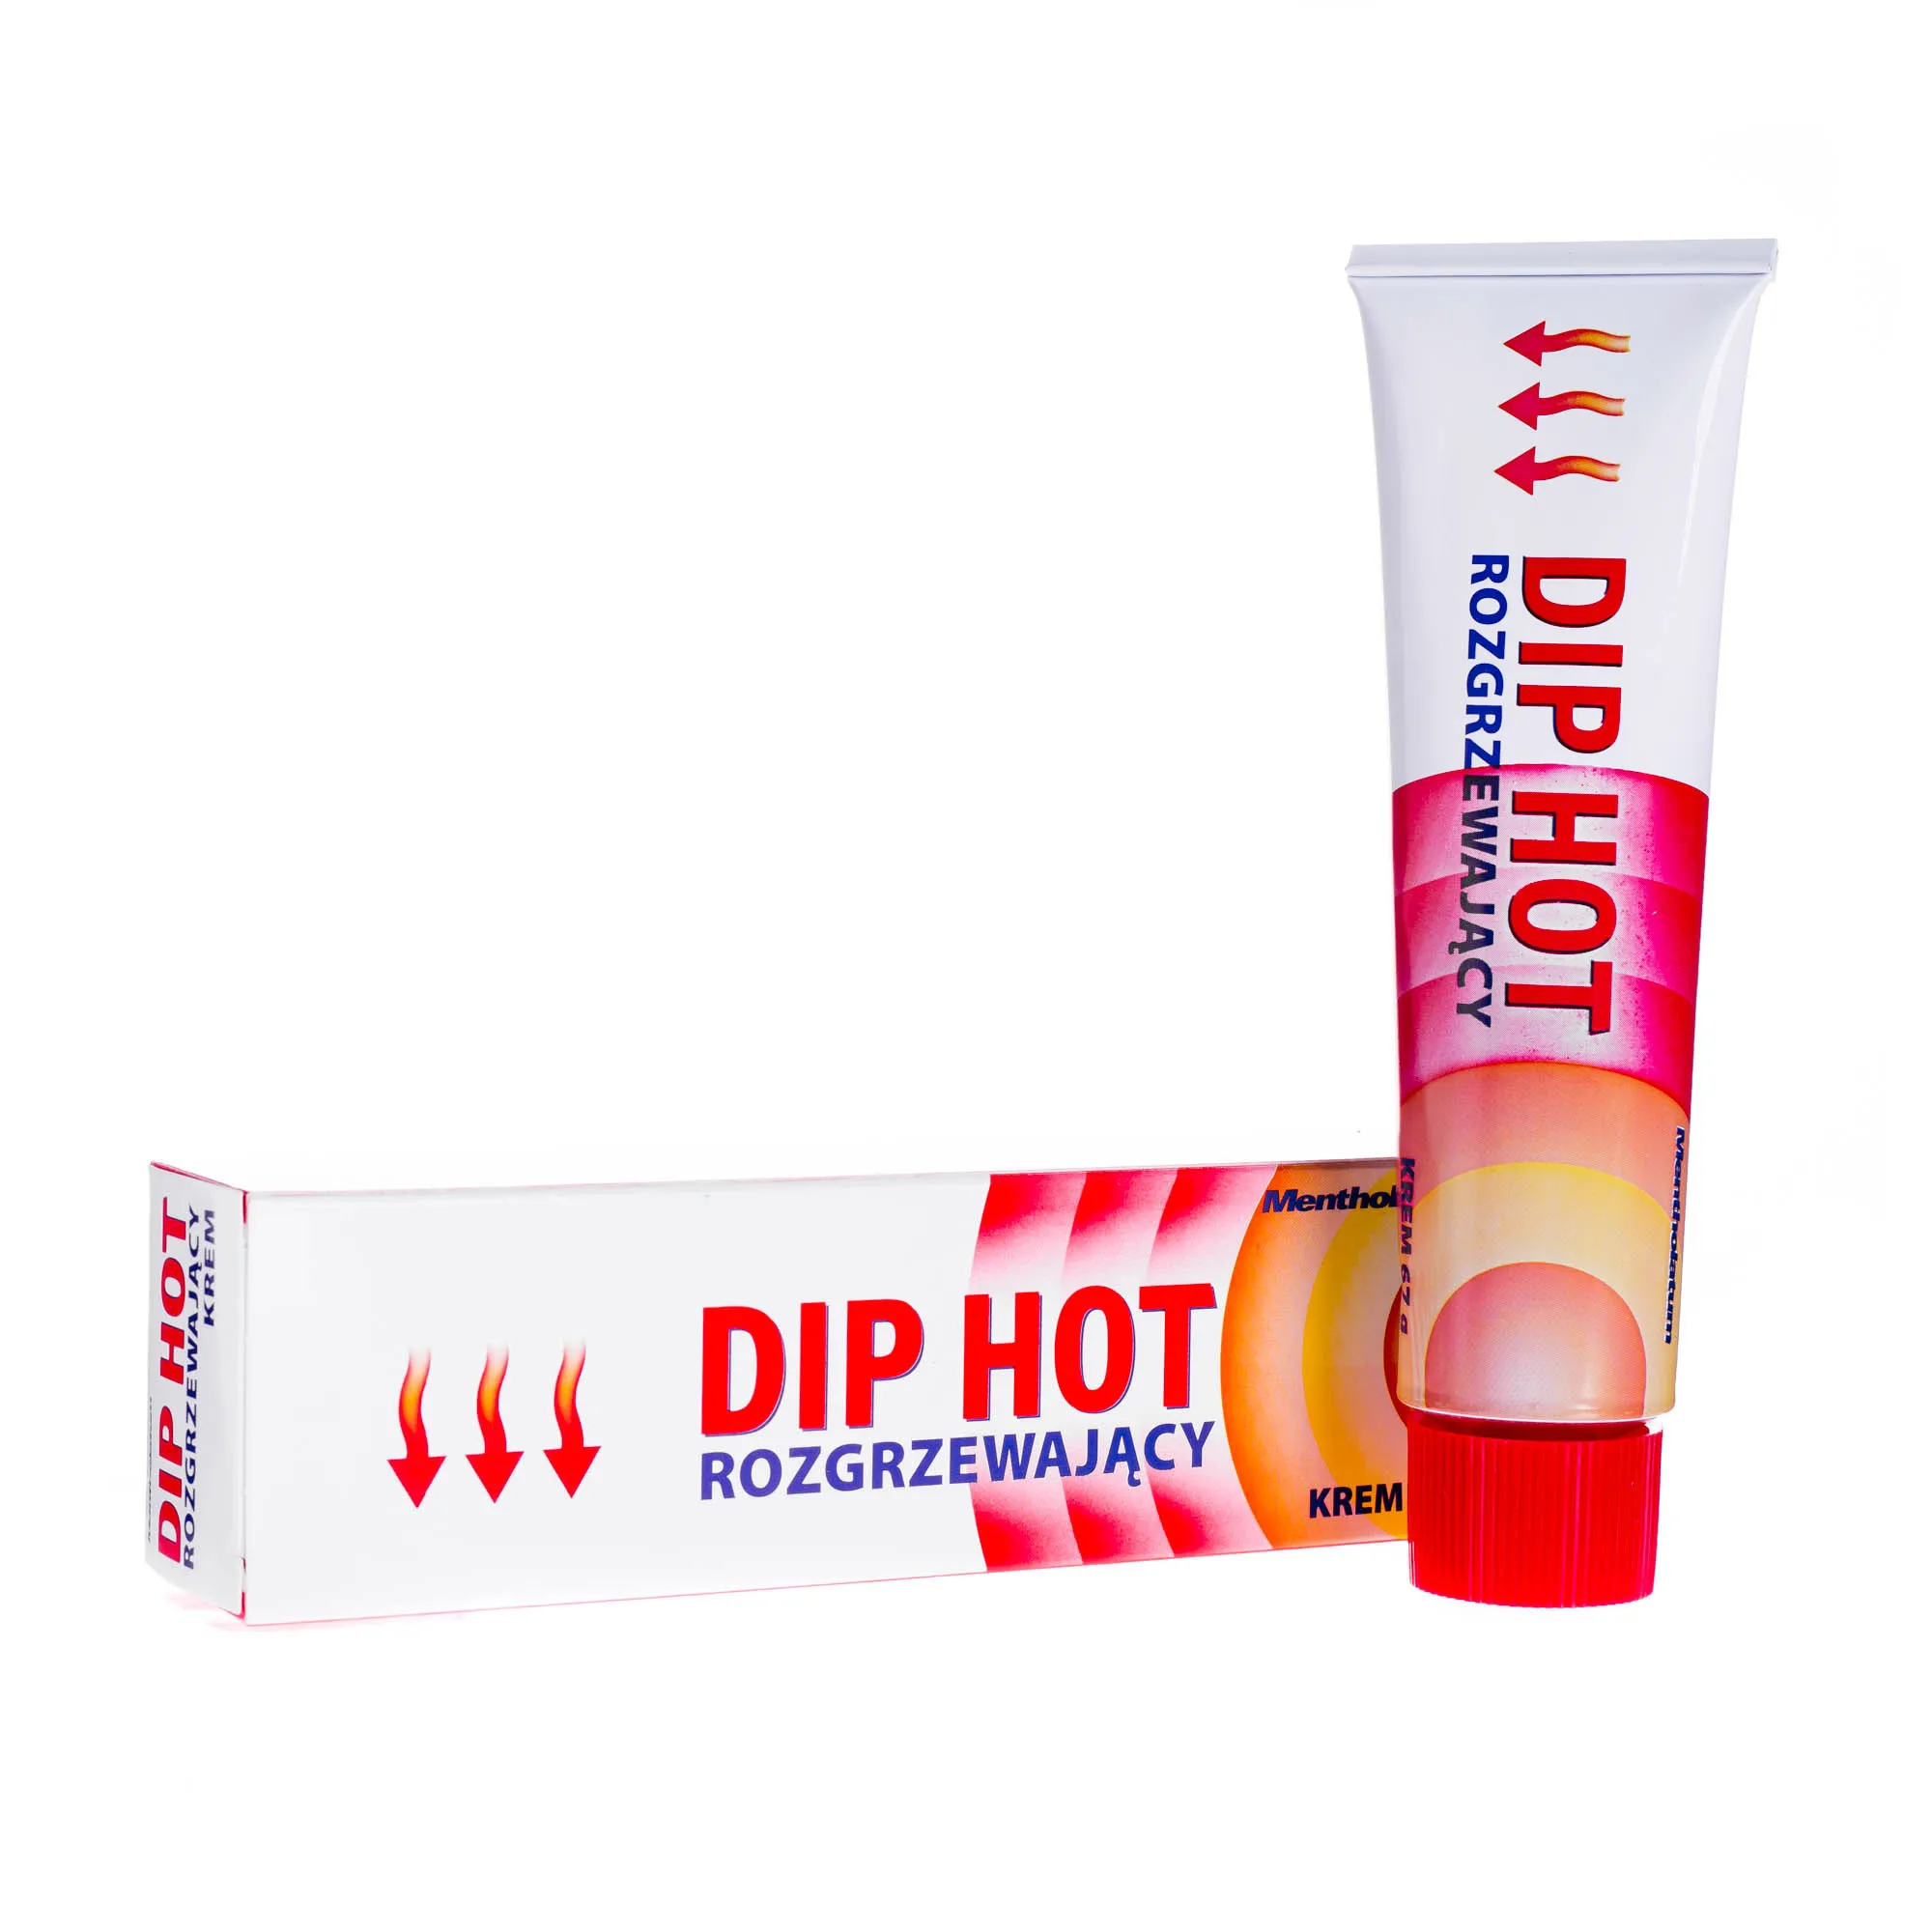 Dip Hot - rozgrzewający krem stosowany objawowo w bólach mięśniowych i stawowych, 67 g